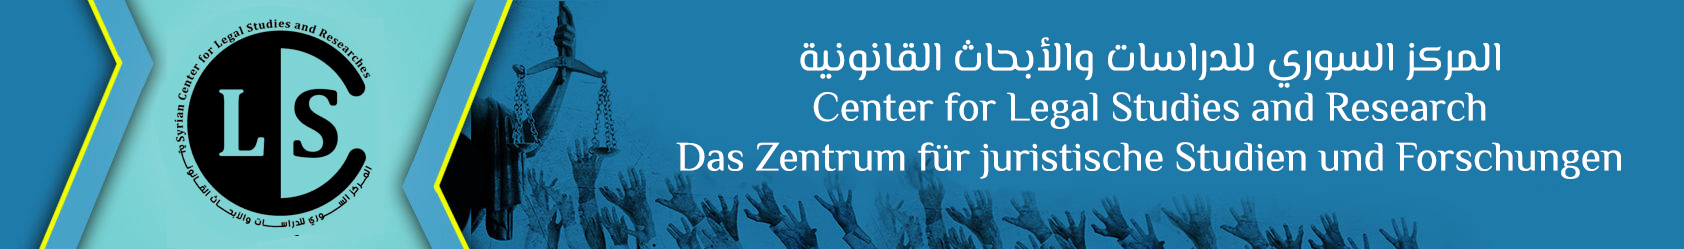 المركز السوري للدراسات و الابحاث القانونية